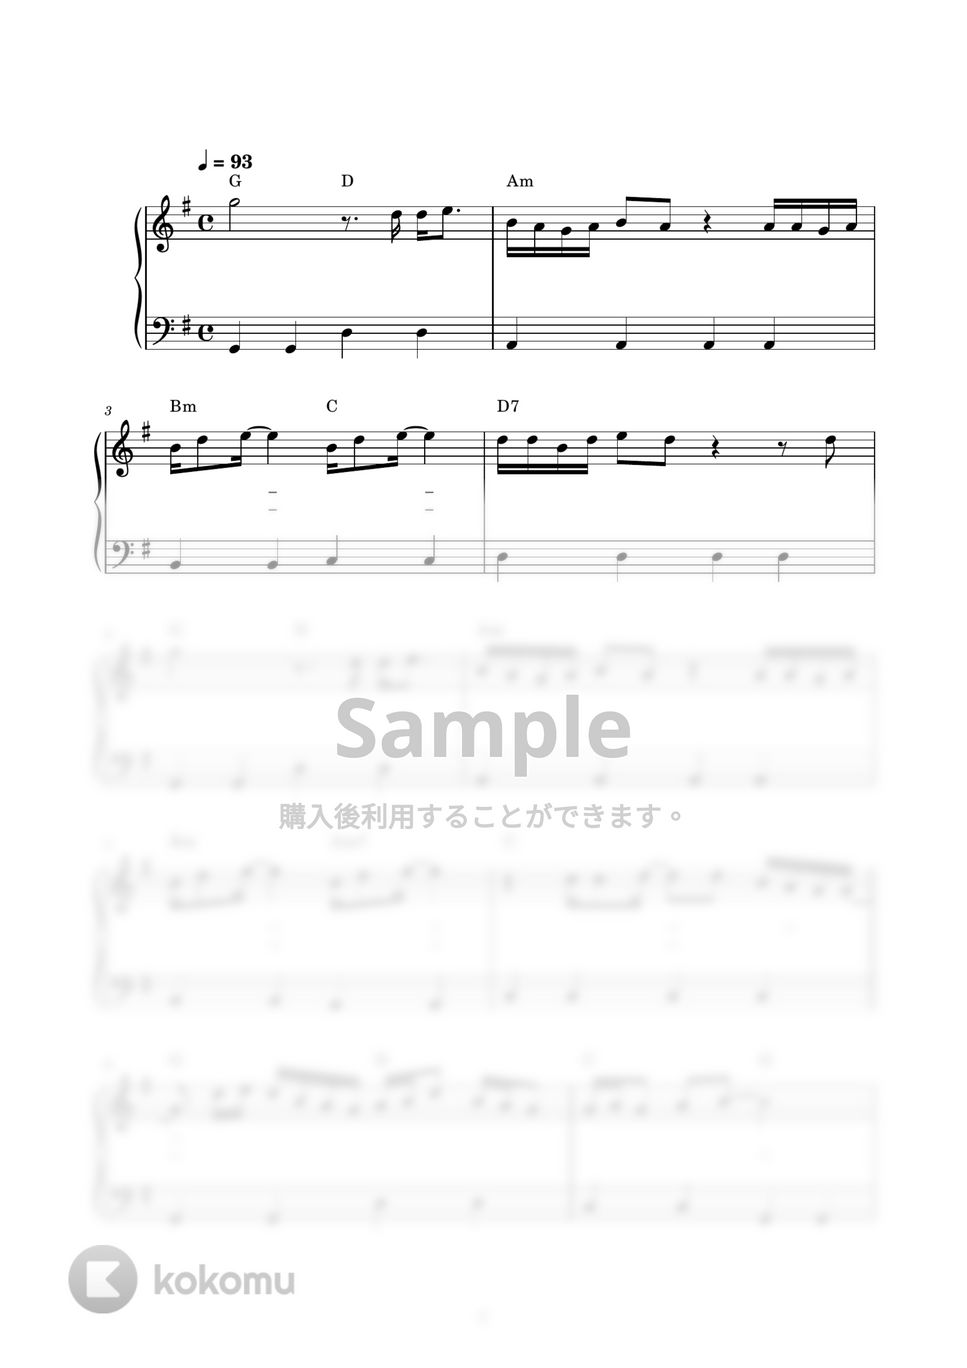 ウルフルズ - バンザイ～好きでよかった～ (ピアノ楽譜 / かんたん両手 / 歌詞付き / ドレミ付き / 初心者向き) by piano.tokyo